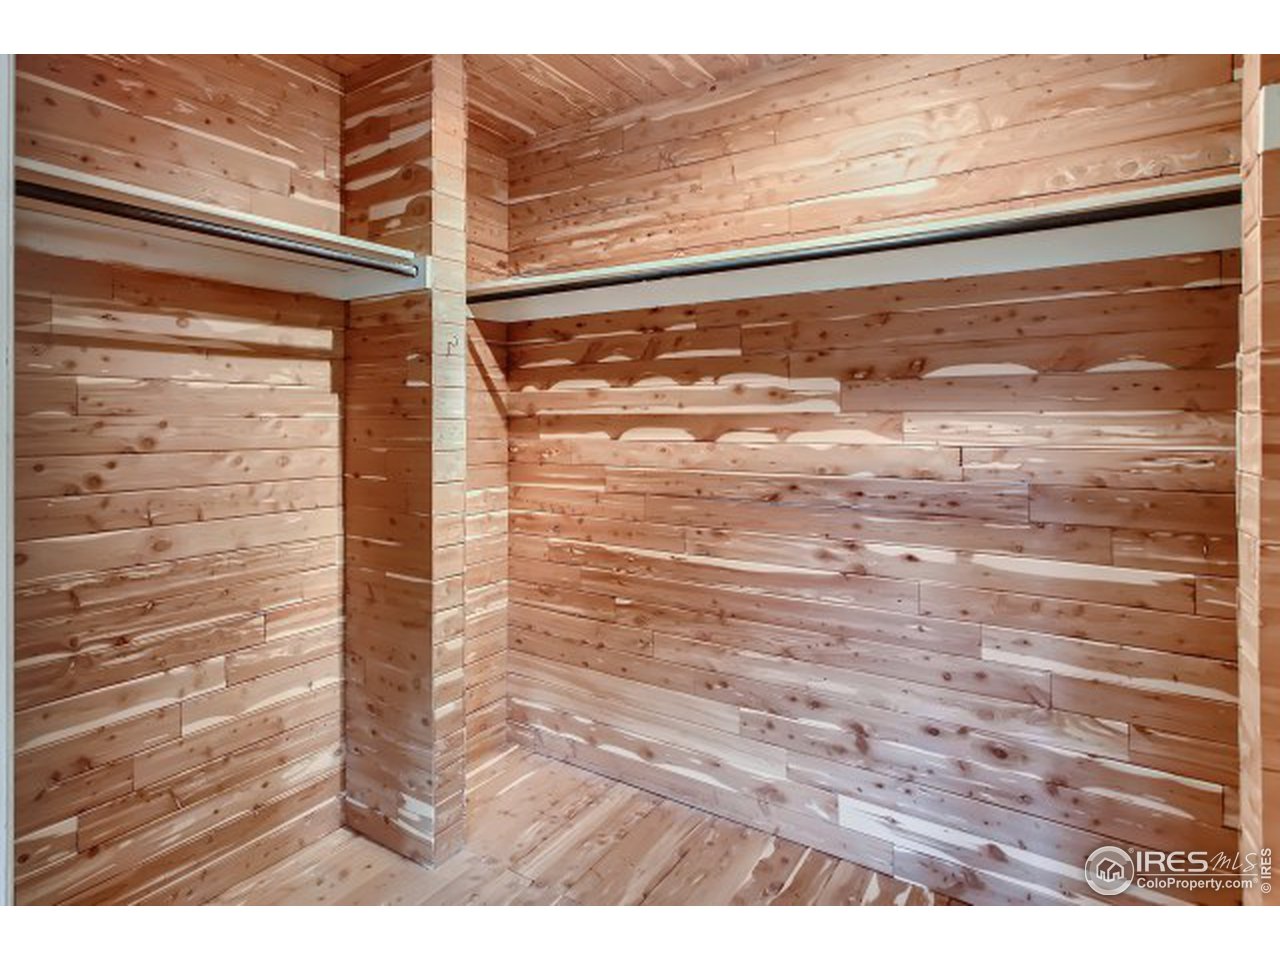 Large cedar walk-in closet